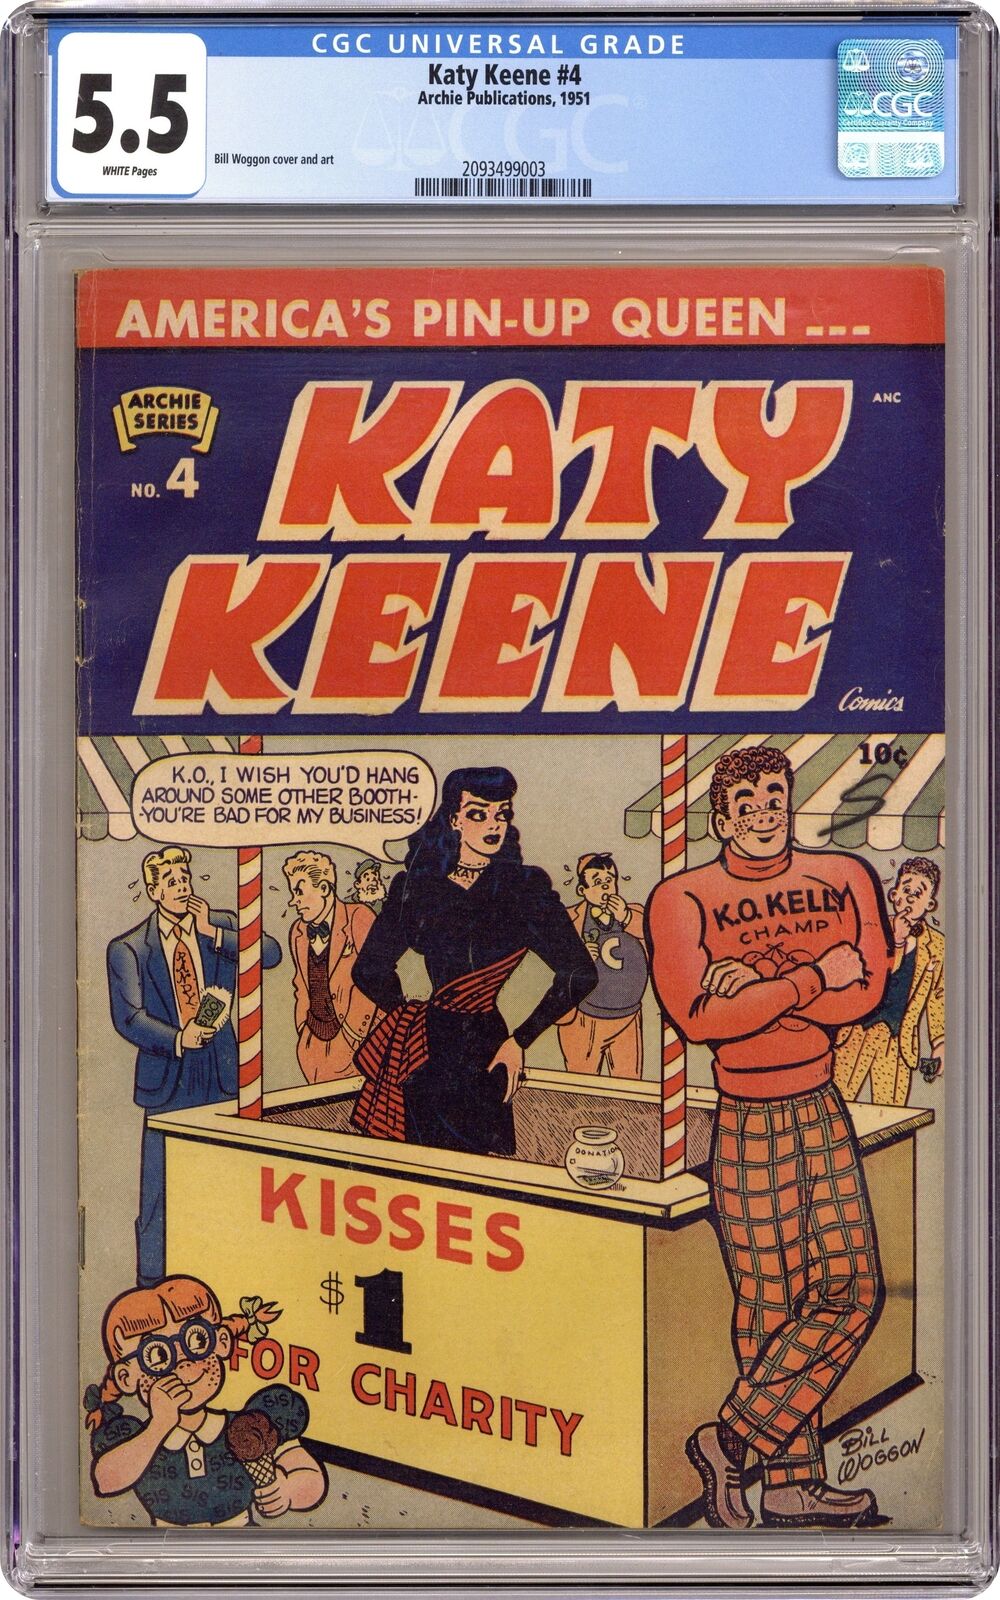 Katy Keene #4 CGC 5.5 1951 2093499003